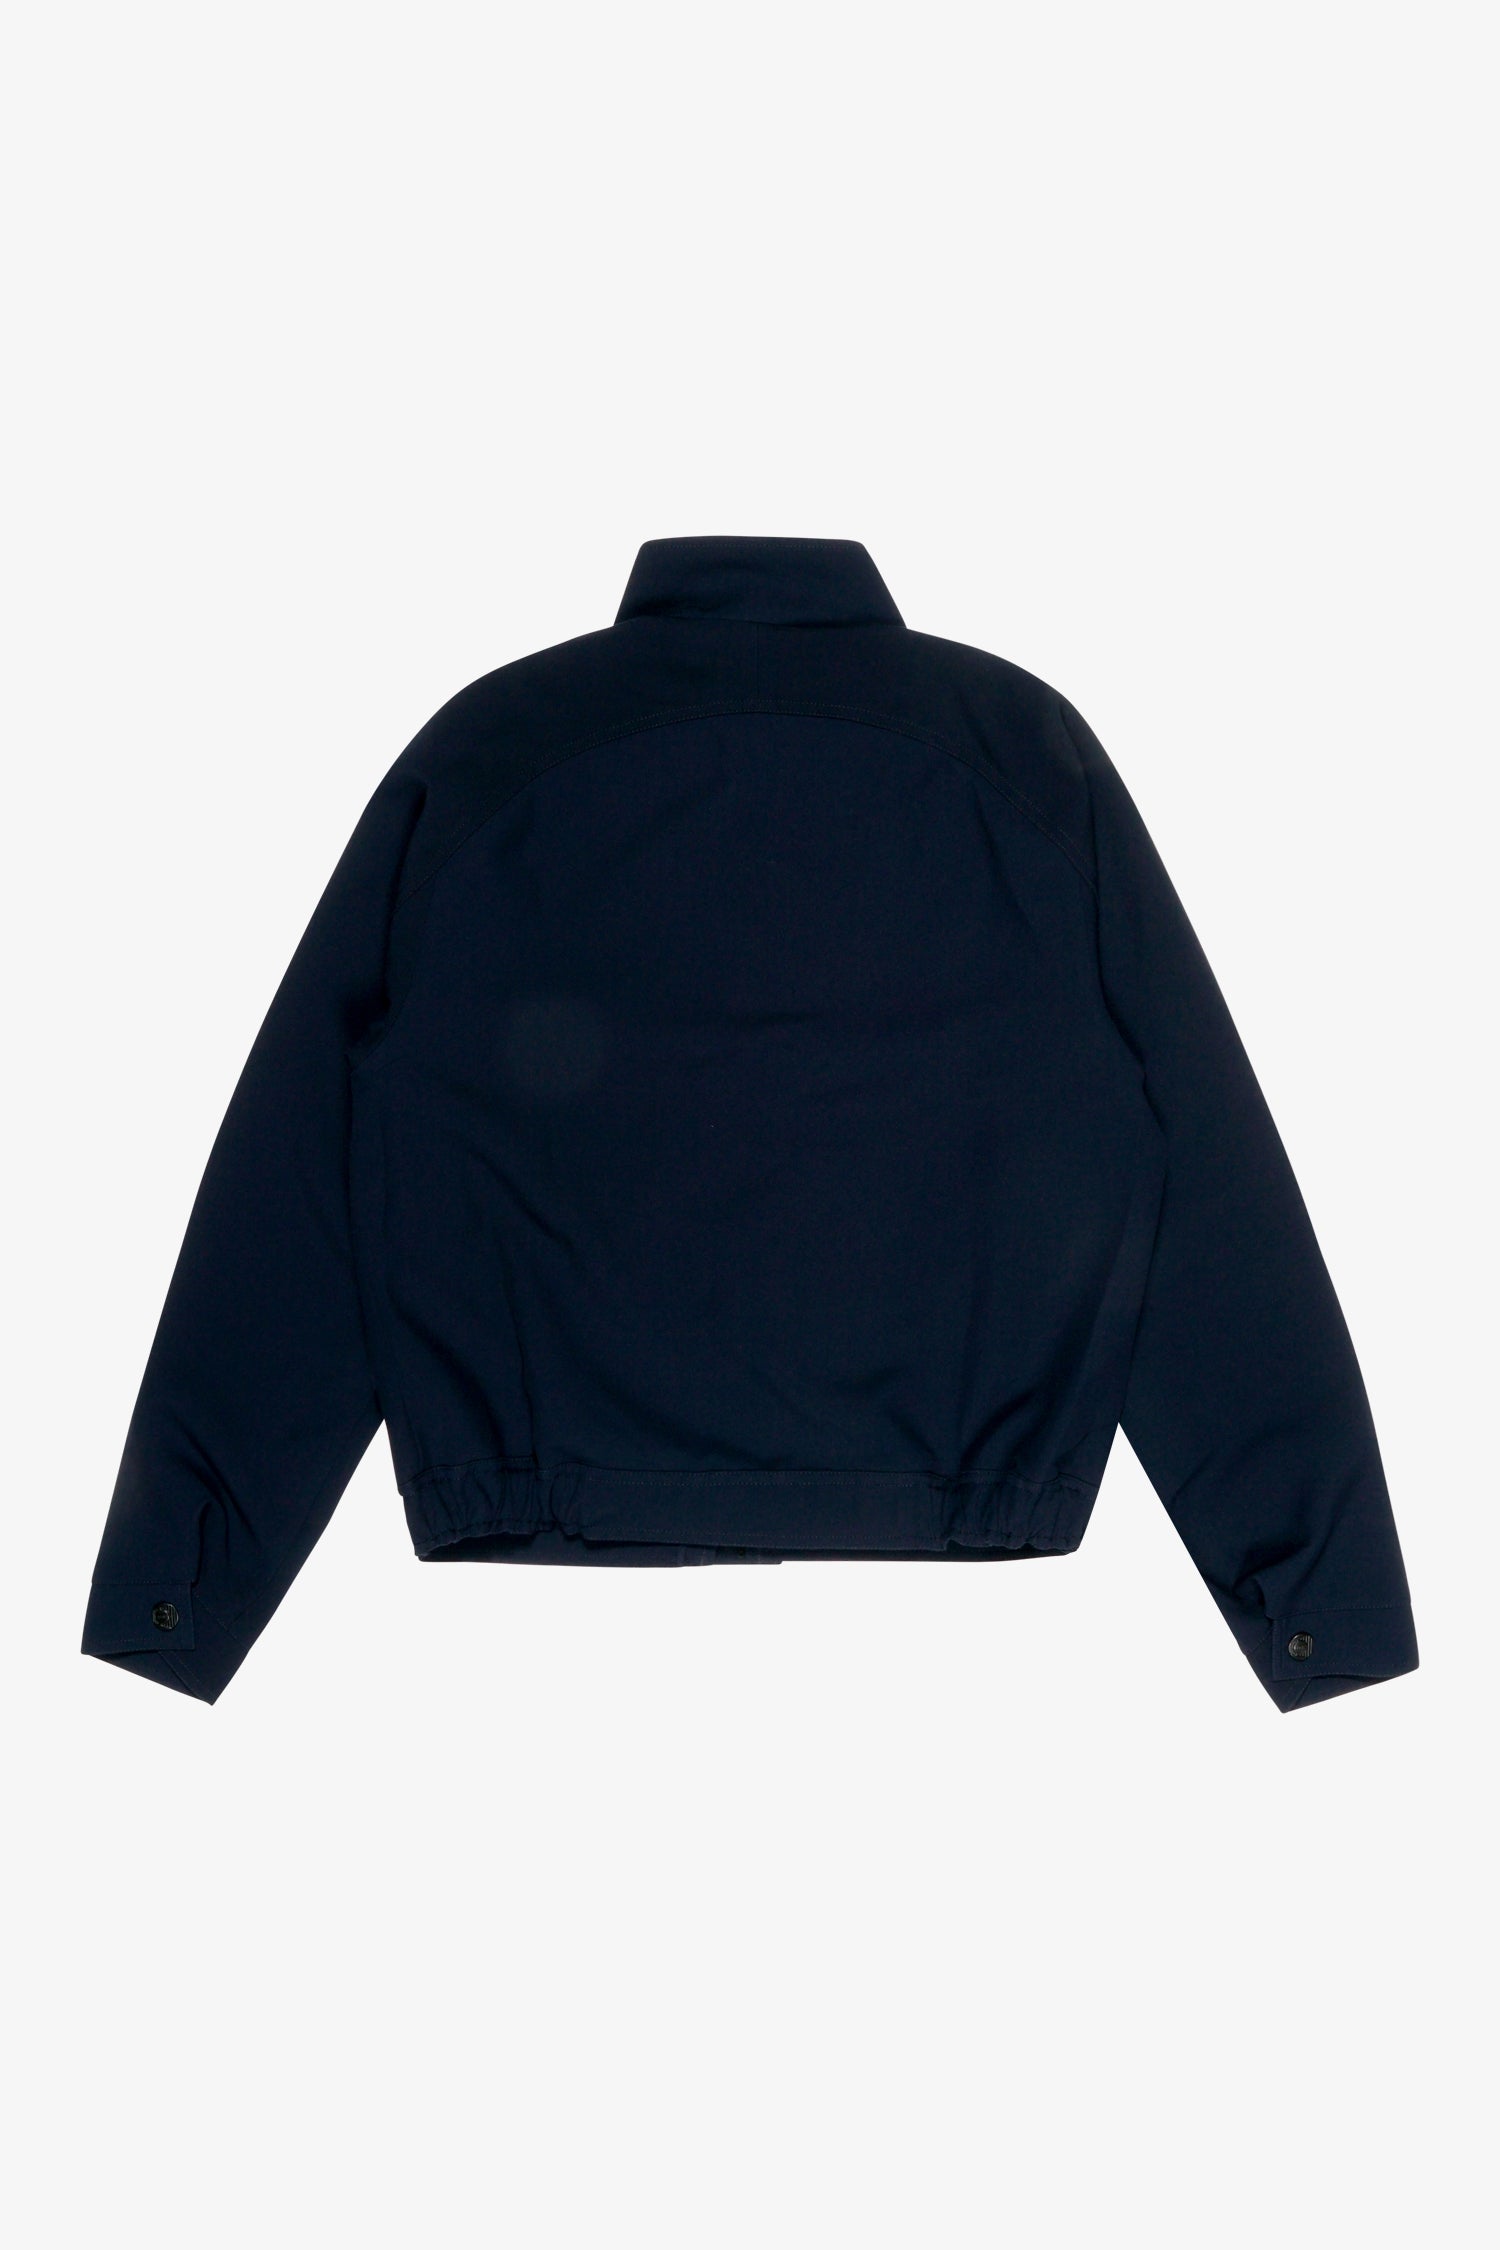 Selectshop FRAME - AFFIX Mobilisation Jacket Outerwear Dubai